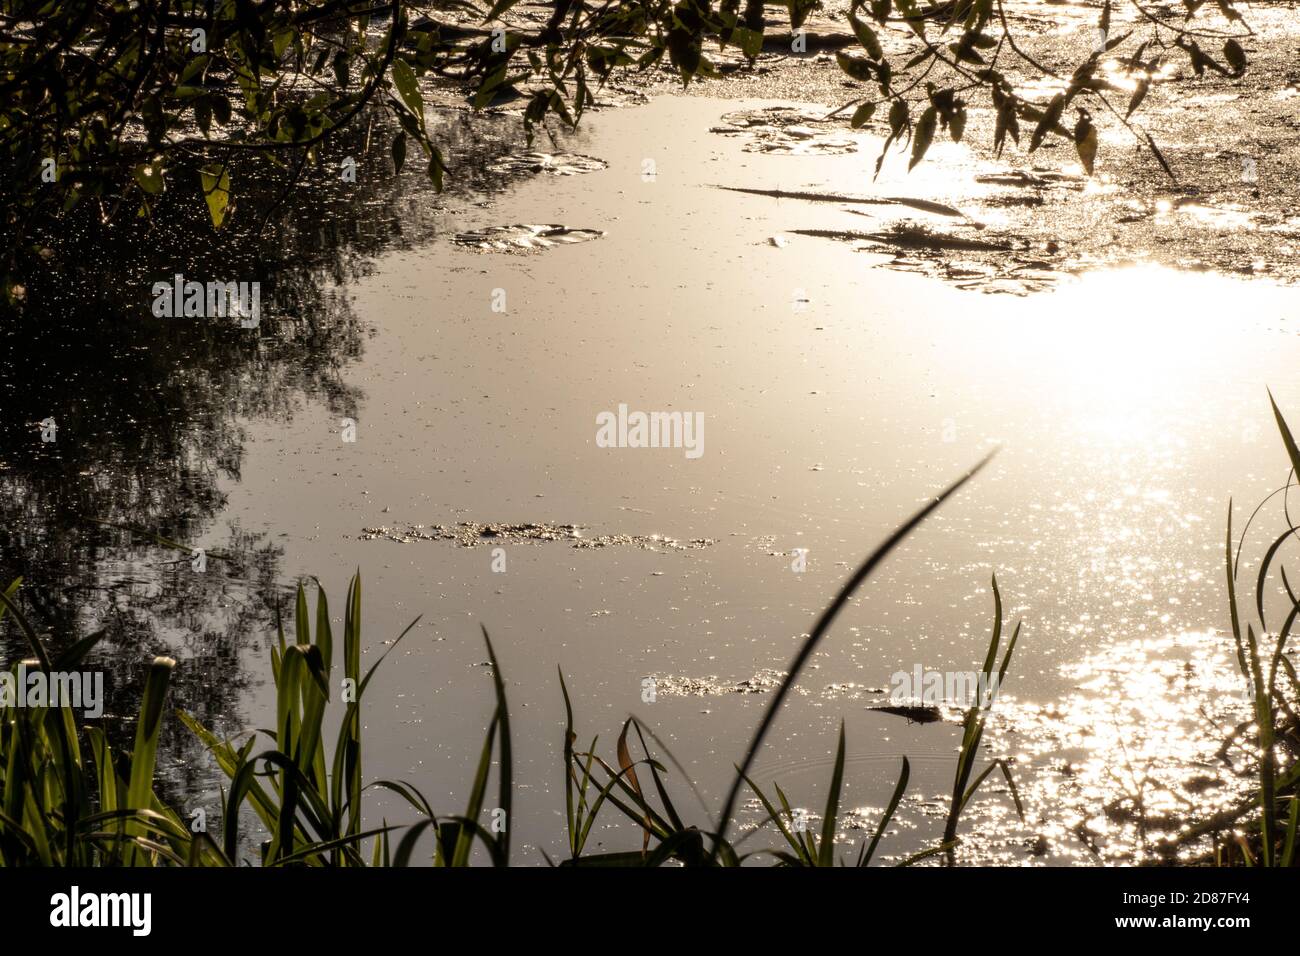 Sonnenuntergang Gold Sonne Licht strahlend auf Fluss Wasseroberfläche Nahaufnahme mit Gras und Bäumen Rahmen Reflexion. Moody landschaftlich sonnig ruhig Herbst natürlichen Hintergrund Stockfoto